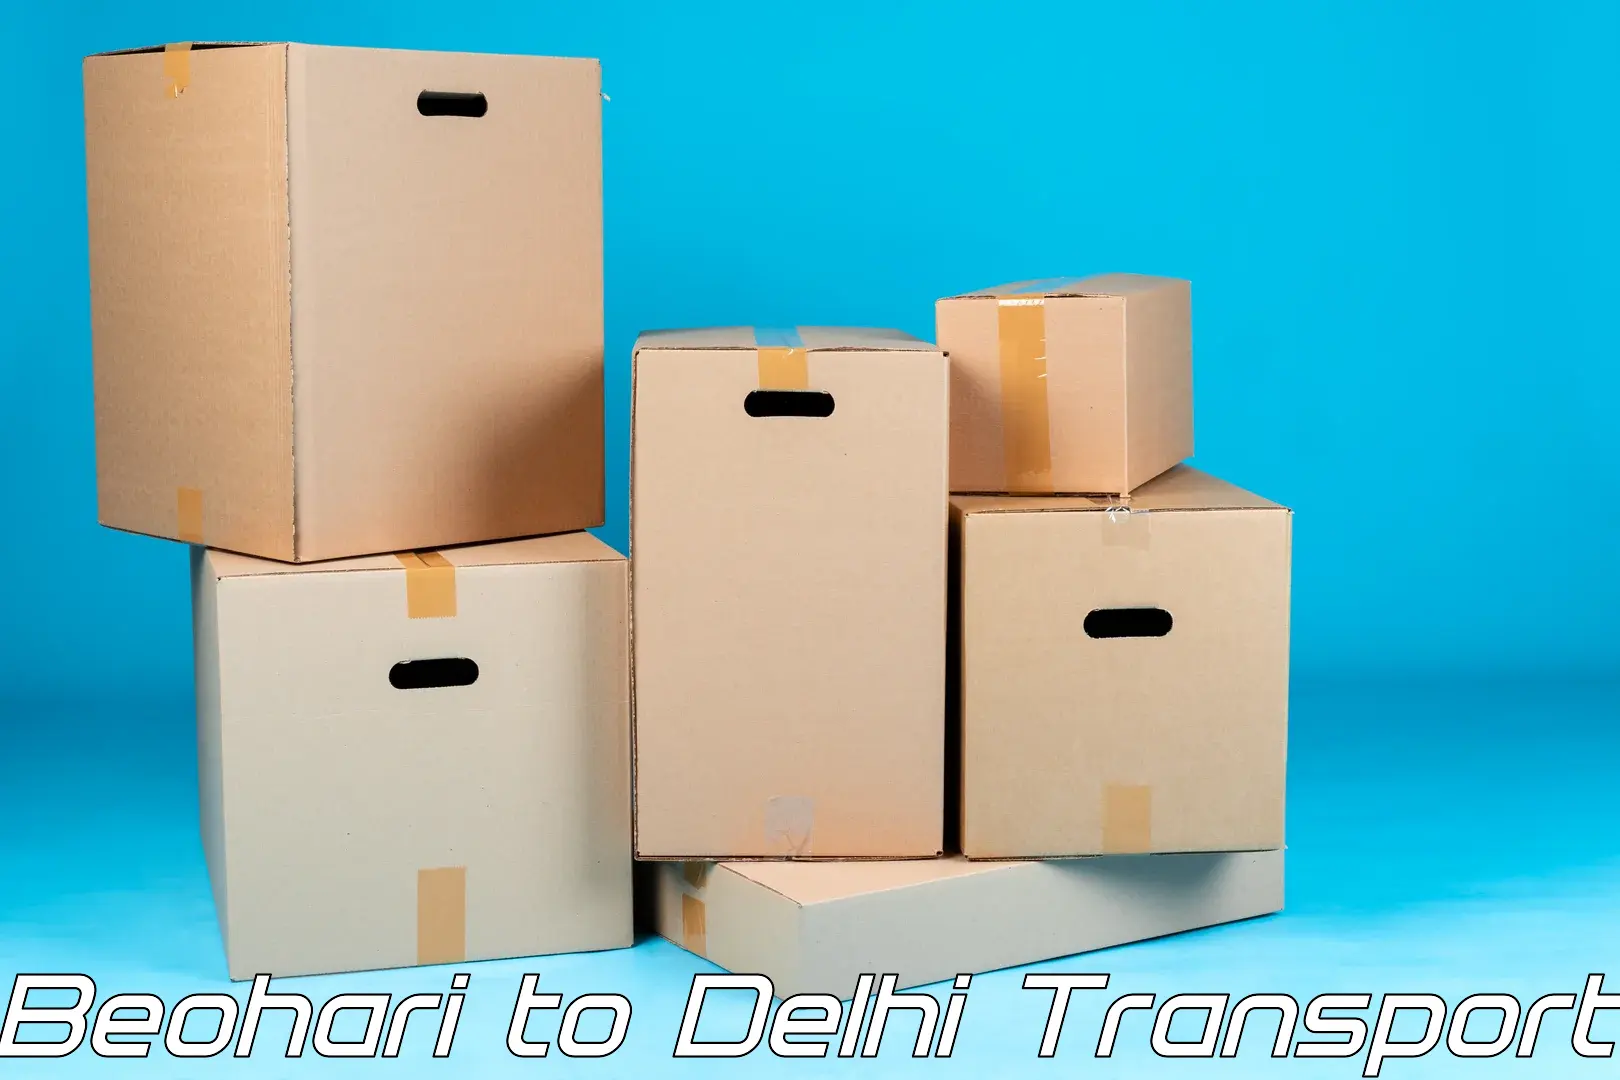 Online transport Beohari to Jamia Hamdard New Delhi